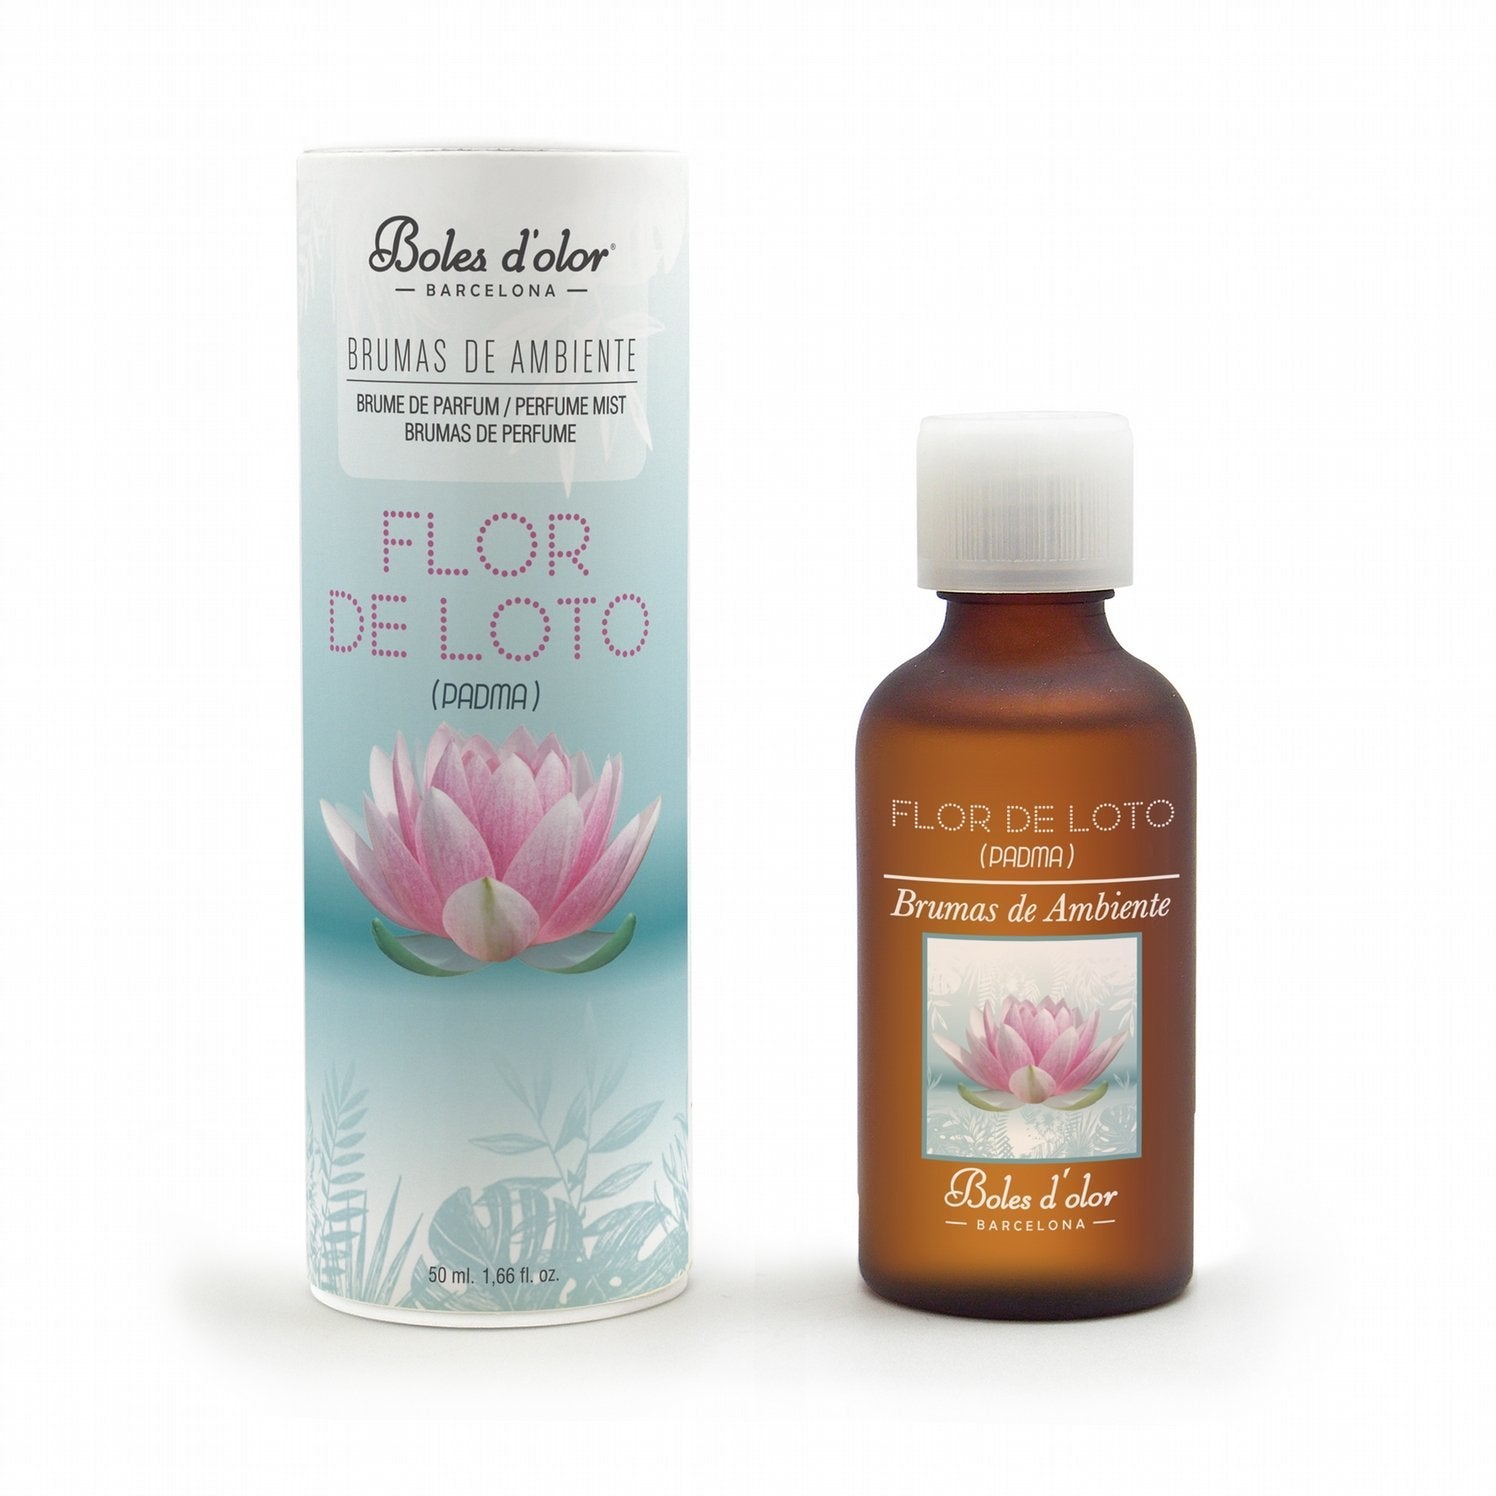 Boles d'olor Flower Shop Brumas de Ambiente Essence (50ml) by Boles d'olor  Fragrance Mist Oils & Mist Diffusers – The Gift Shop (Oulton Broad)